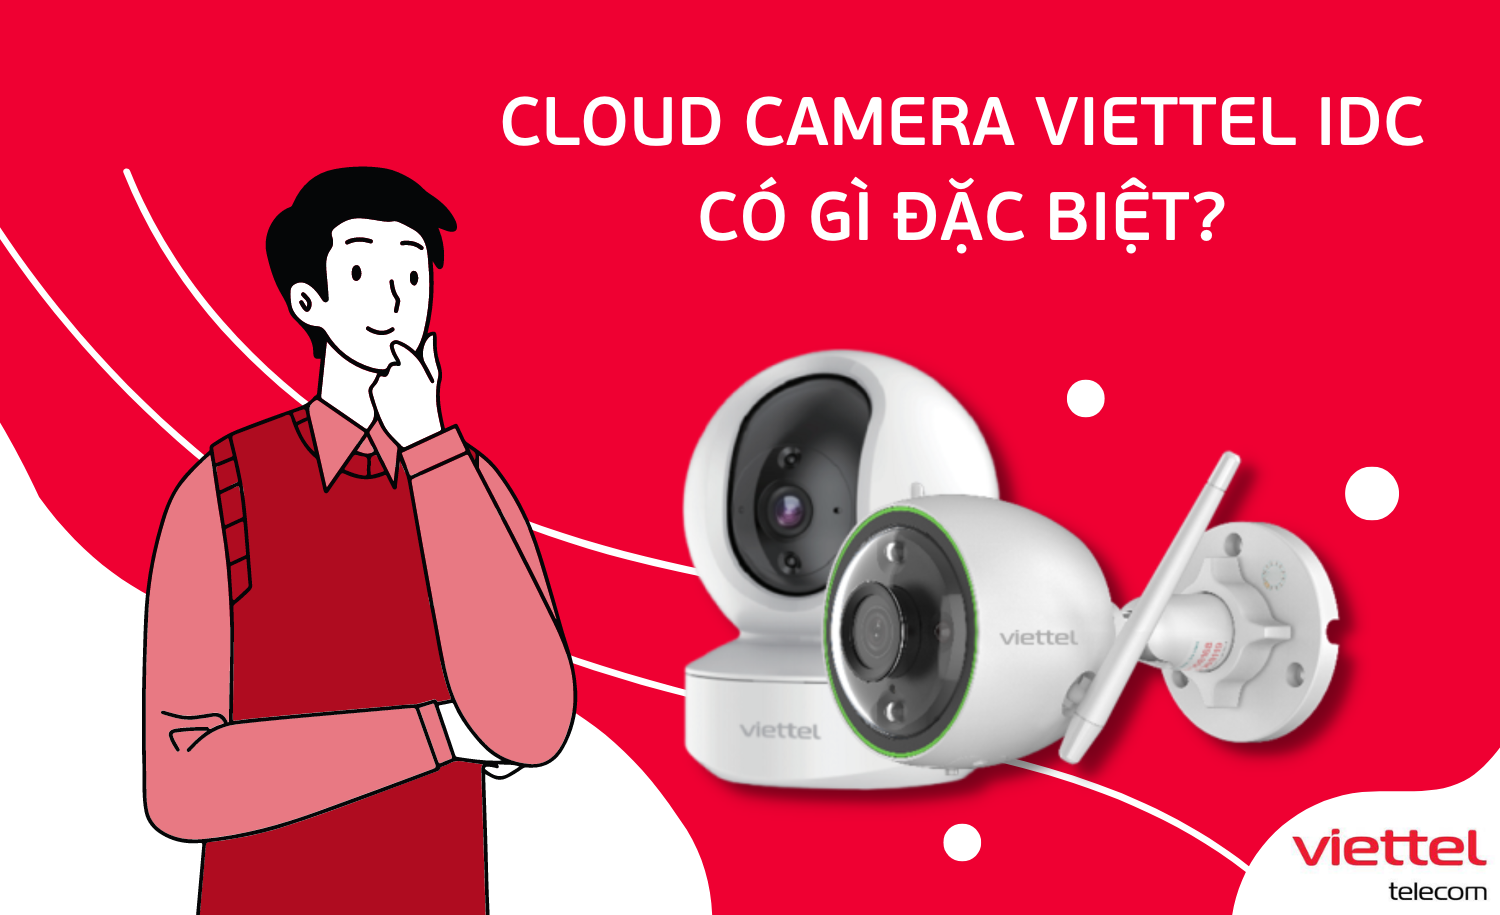 Cloud Camera Viettel IDC có gì đặc biệt?